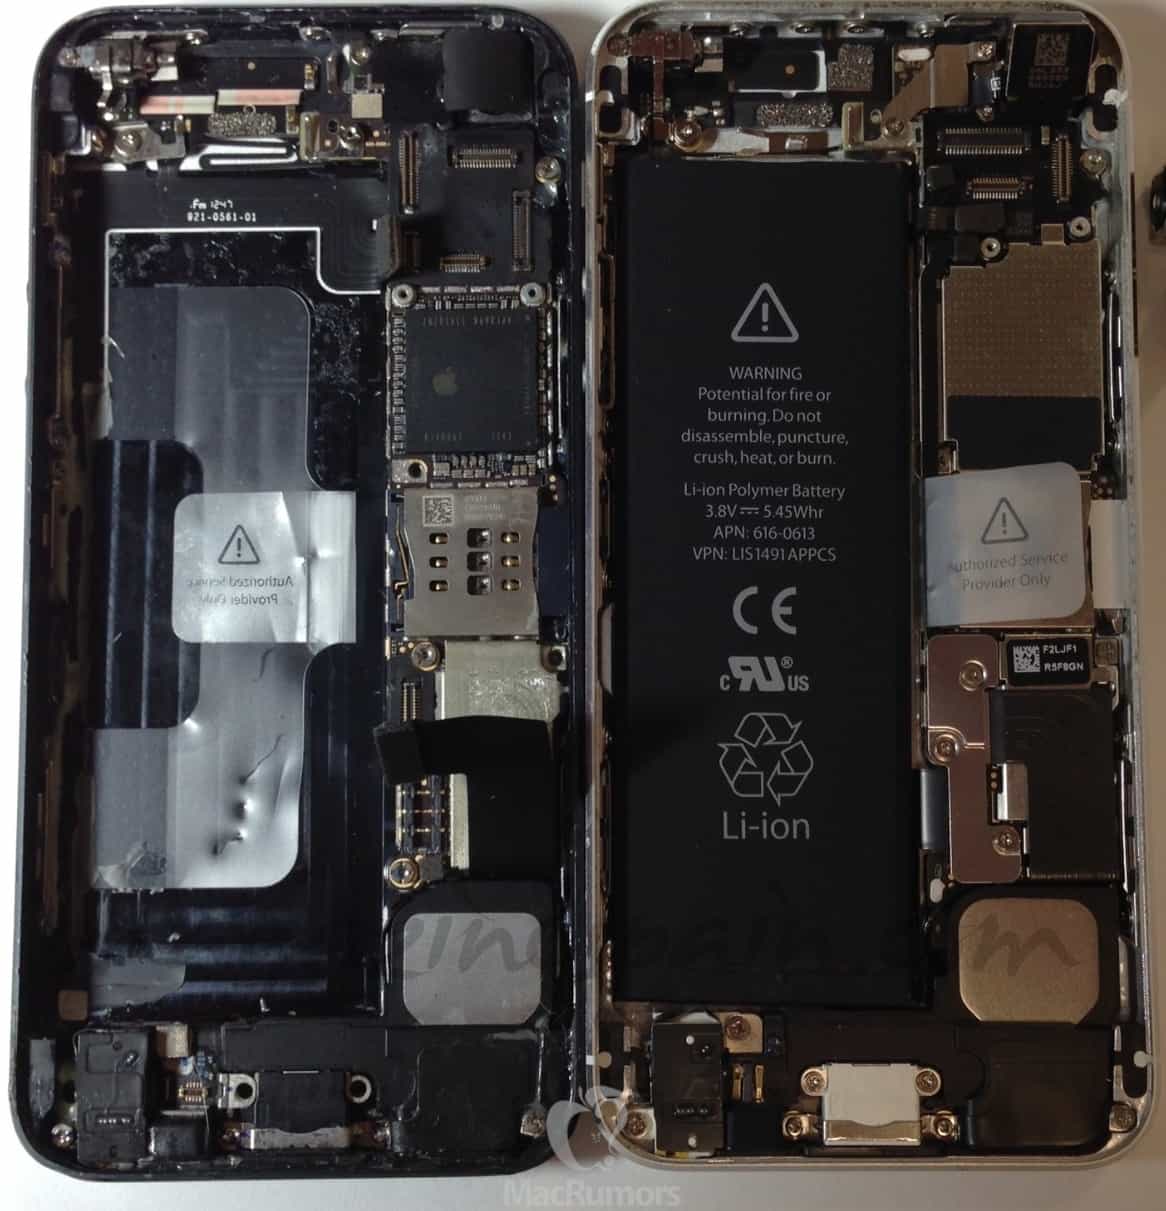 Comparación del interior del futuro iPhone 5S